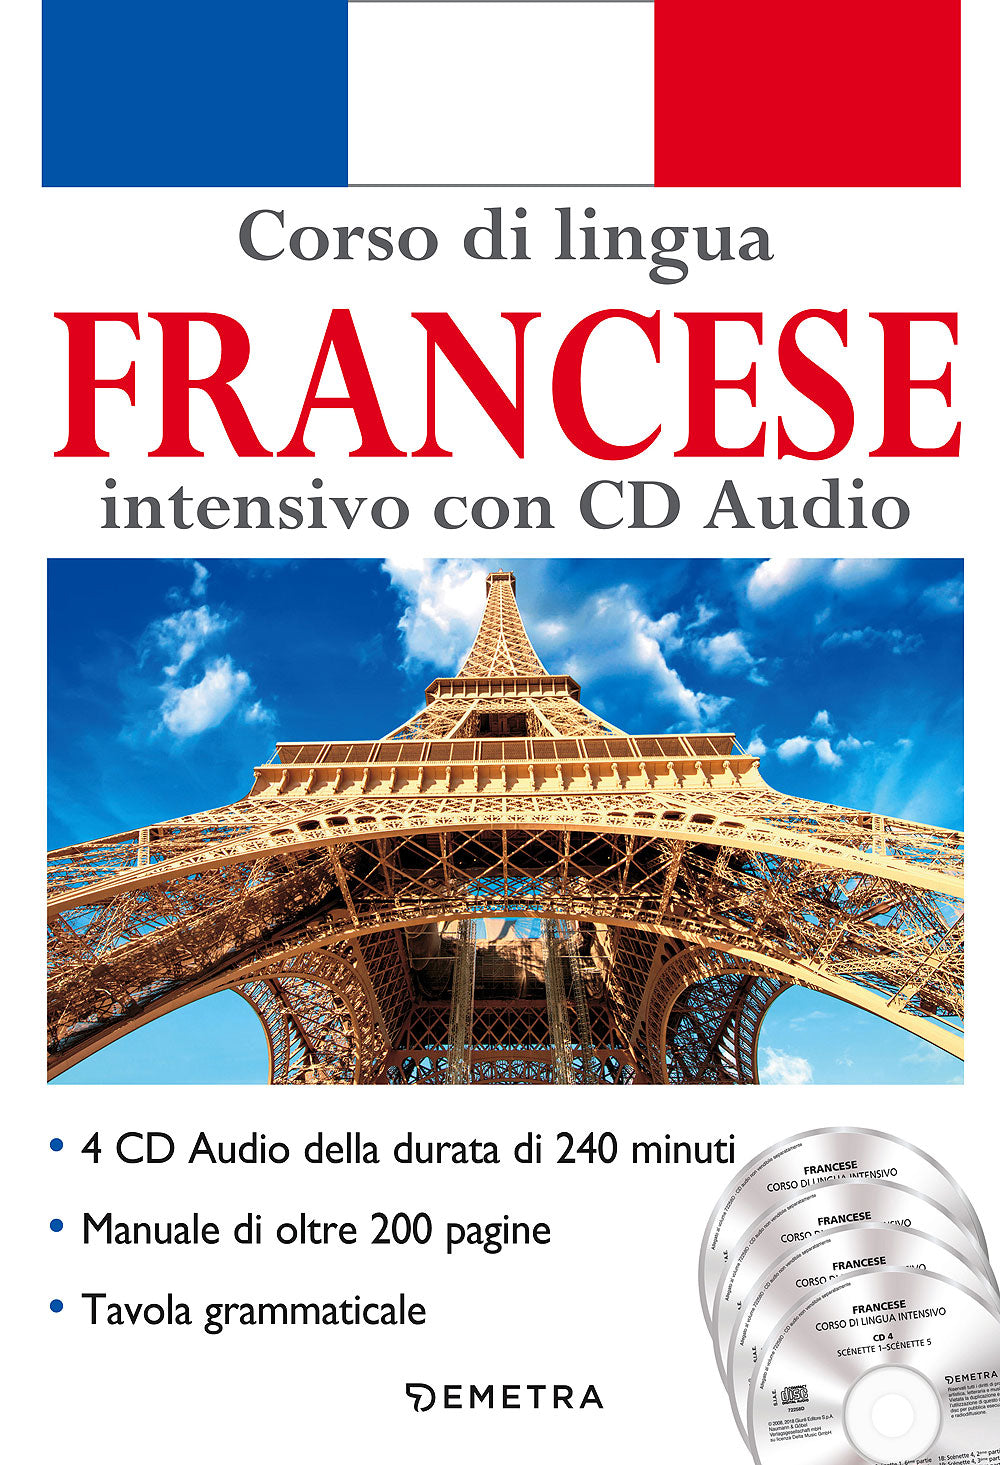 Corso di lingua Francese intensivo con CD Audio. 4 CD della durata di 240 minuti - Manuale di oltre 200 pagine - Tavola grammaticale